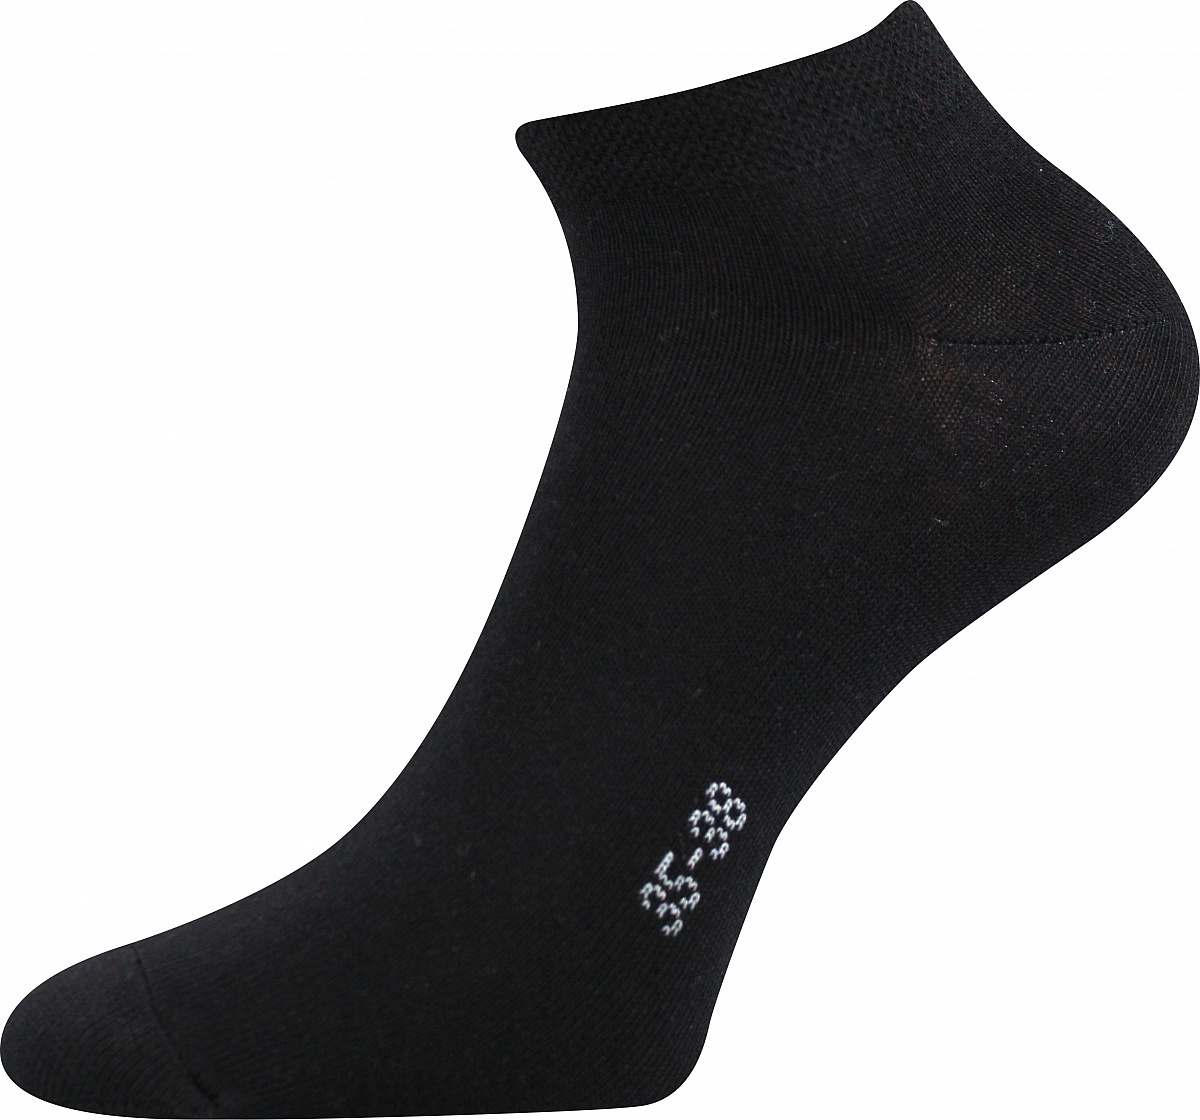 Ponožky Boma Hoho - černé, 39-42